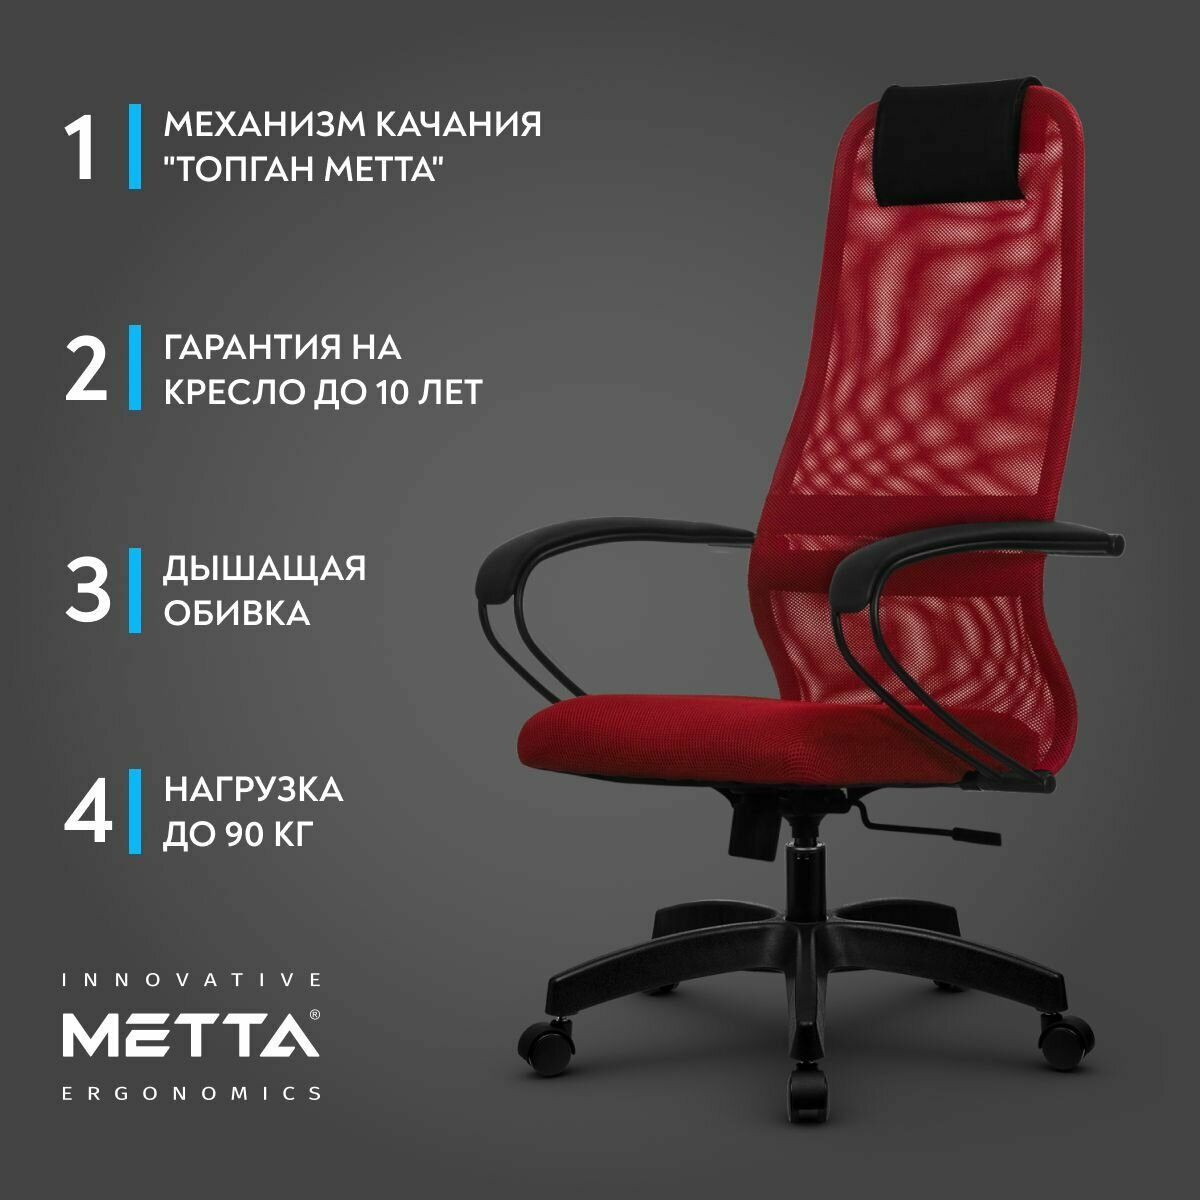 Компьютерное кресло SU-B-8/подл.130/осн.001 красный/красный